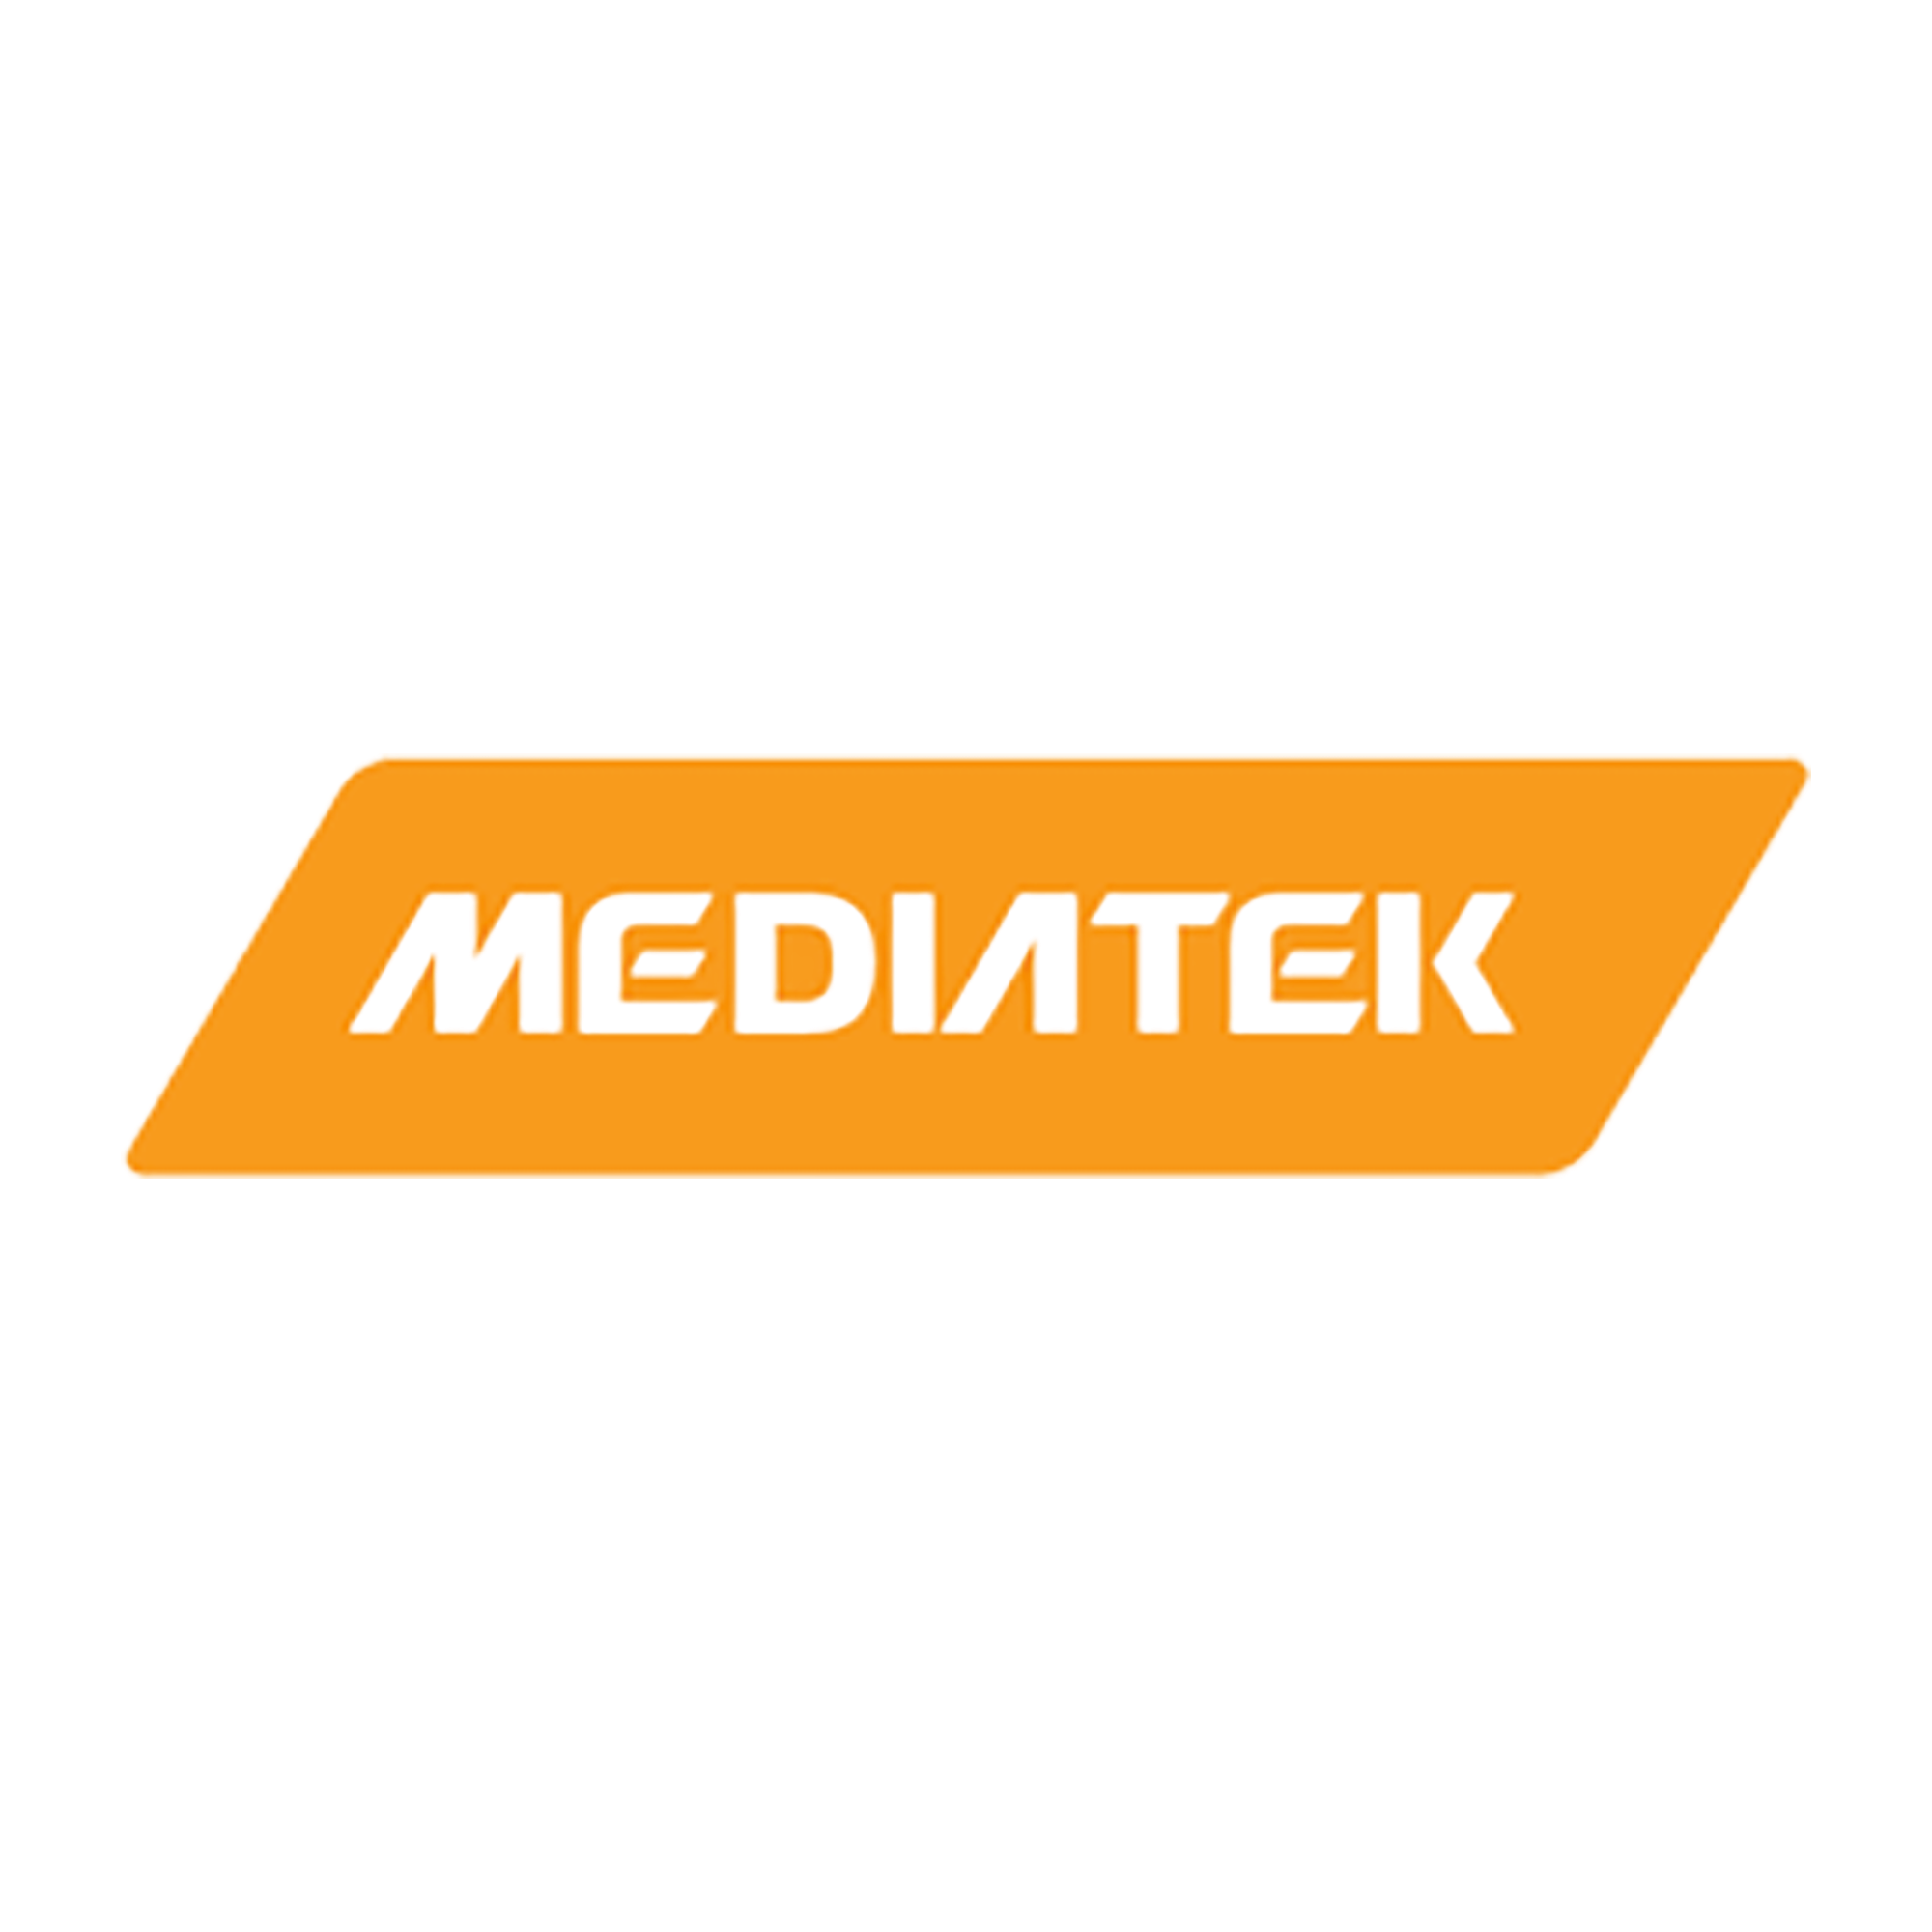 MediaTek image